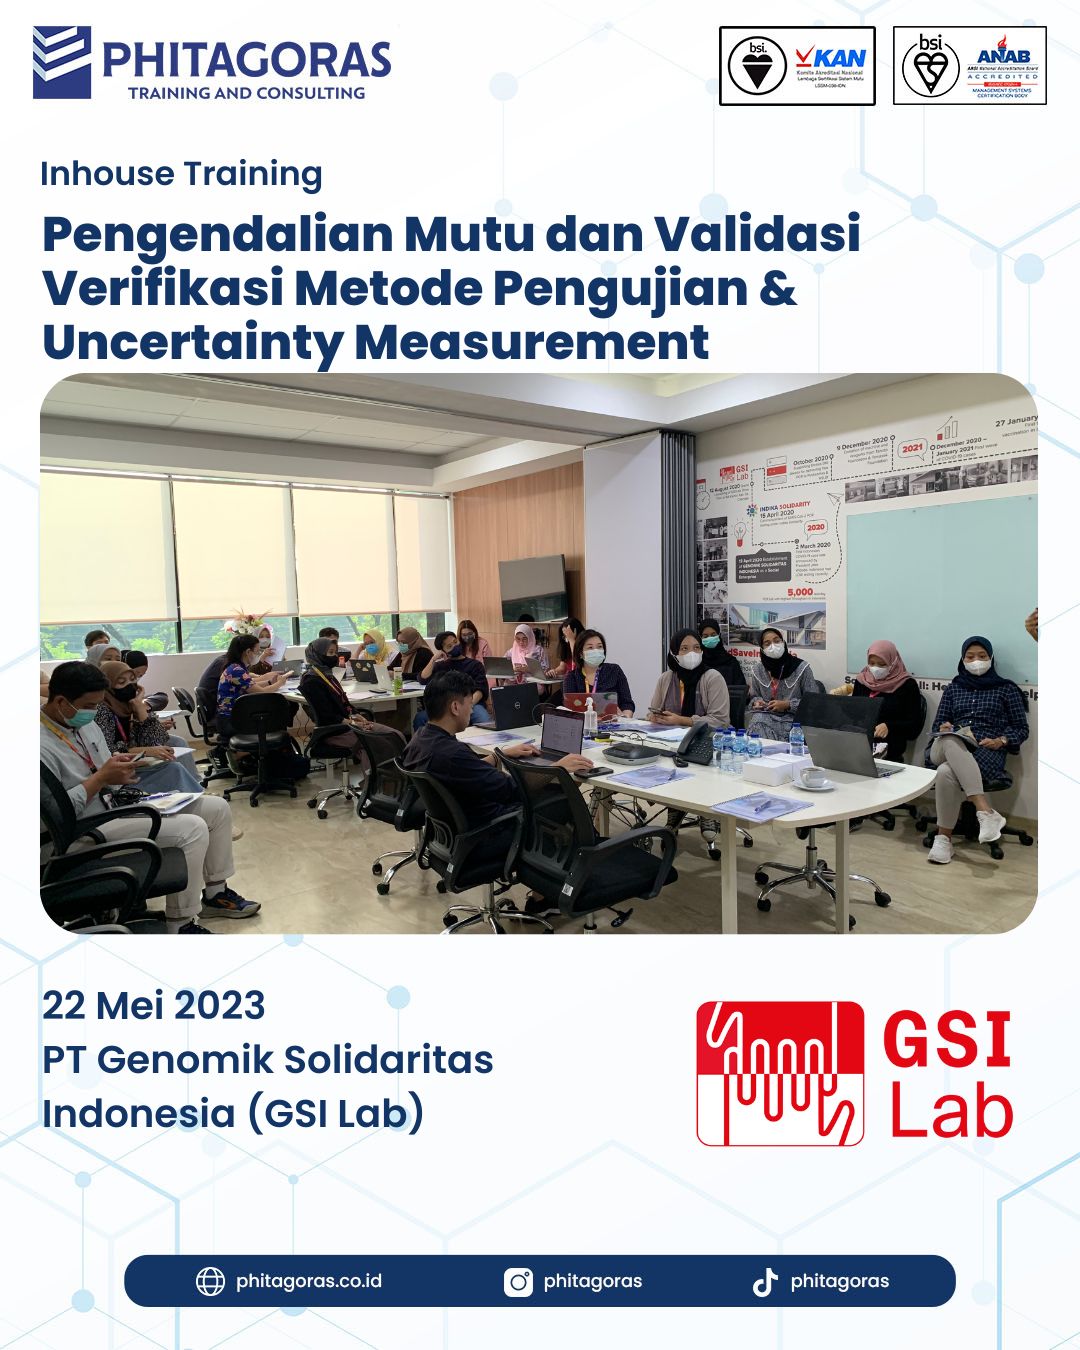 Inhouse Training Pengendalian Mutu dan Validasi Verifikasi Metode Pengujian & Uncertainty Measurement - PT Genomik Solidaritas Indonesia (GSI Lab)